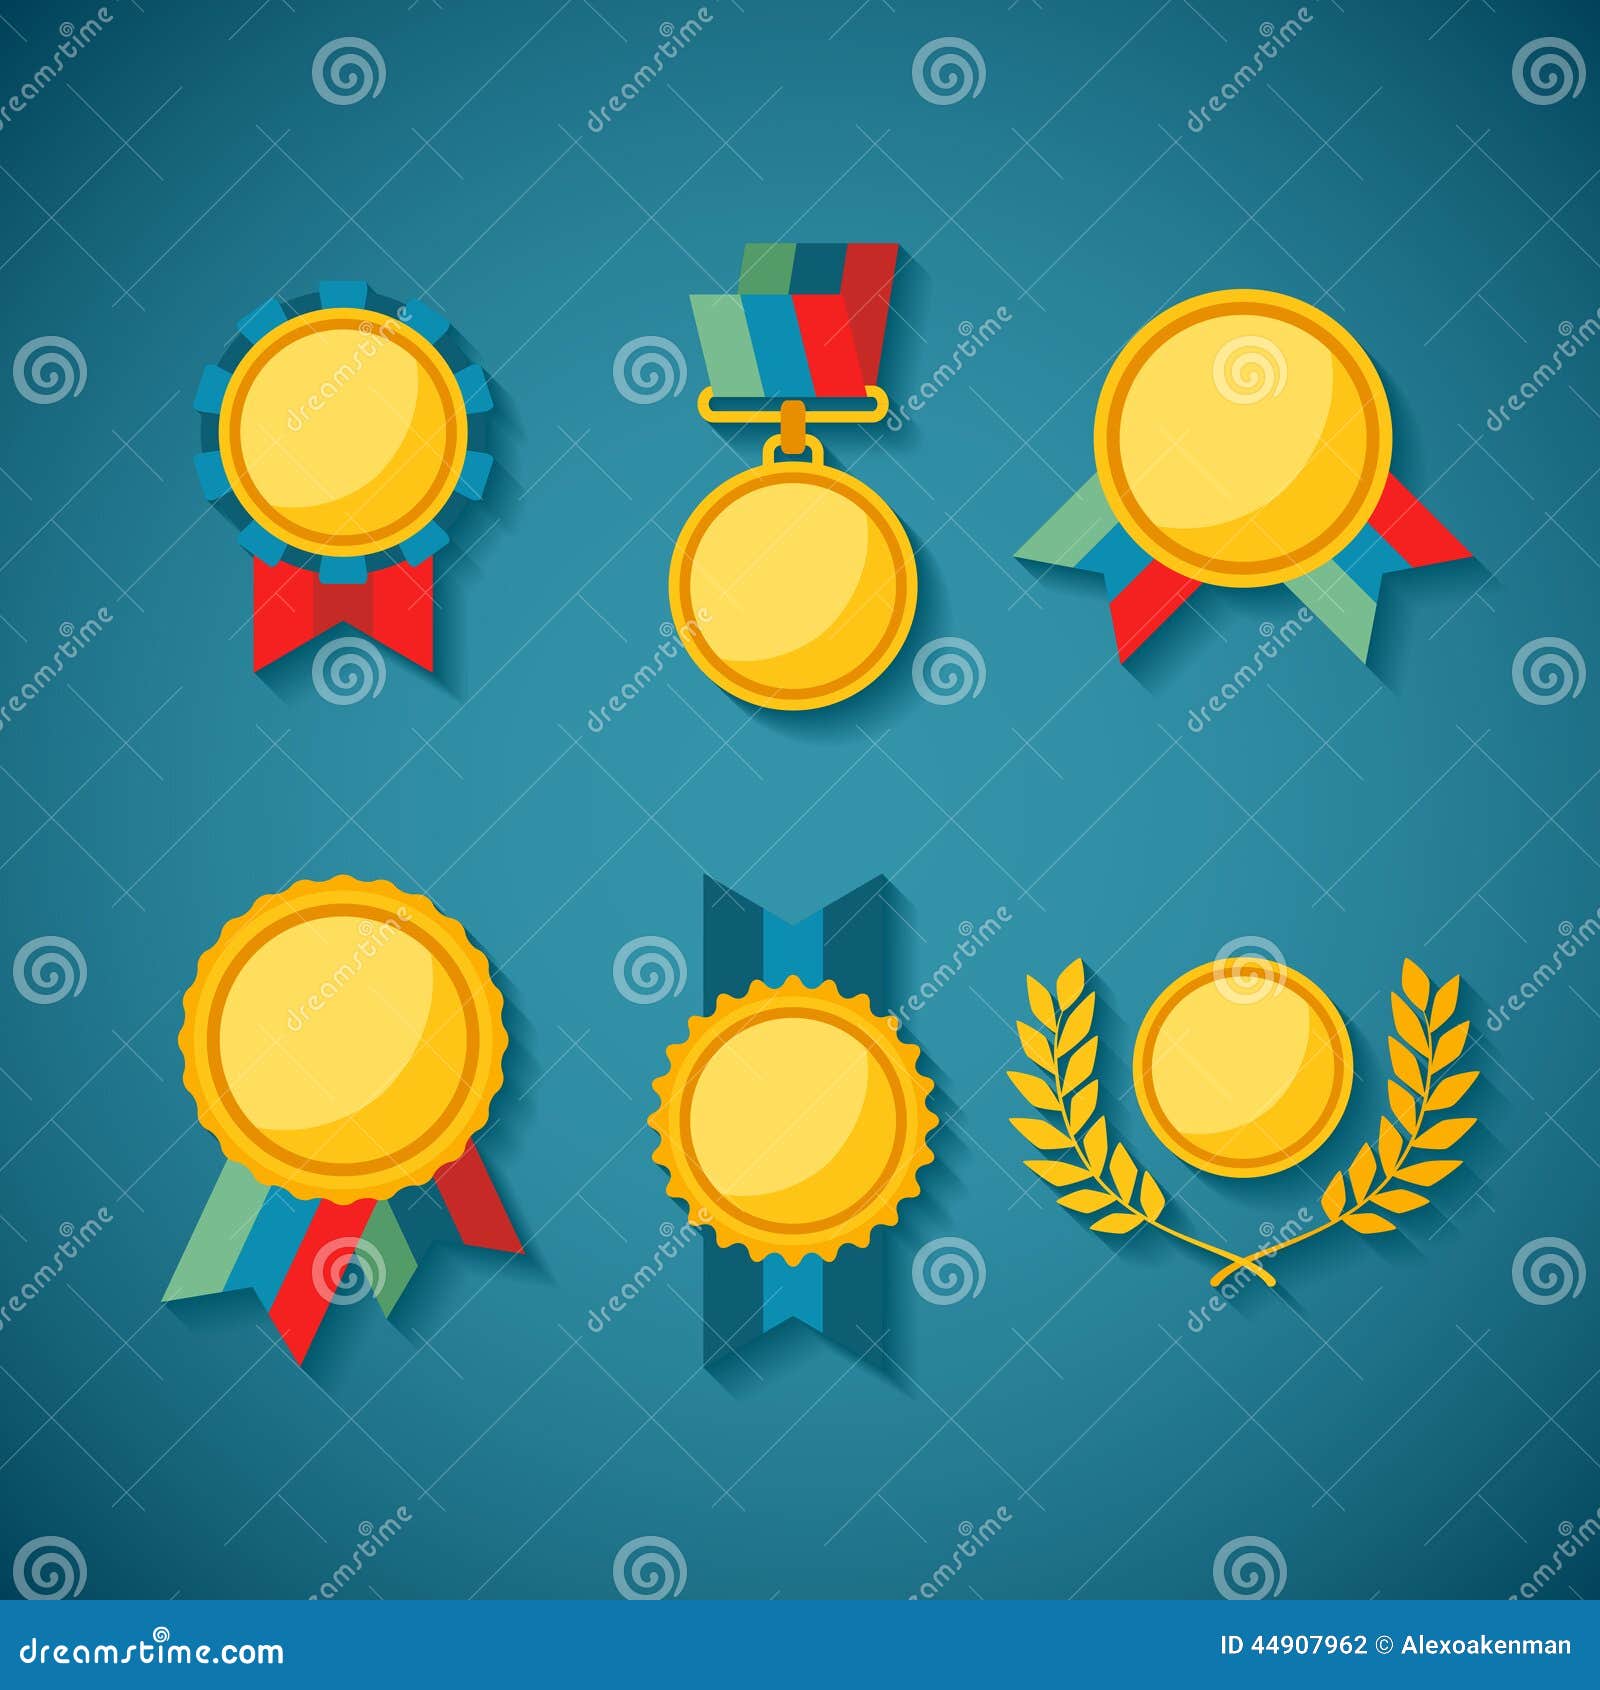 set of  golden awards for rewarding ceremony decoration and distinction